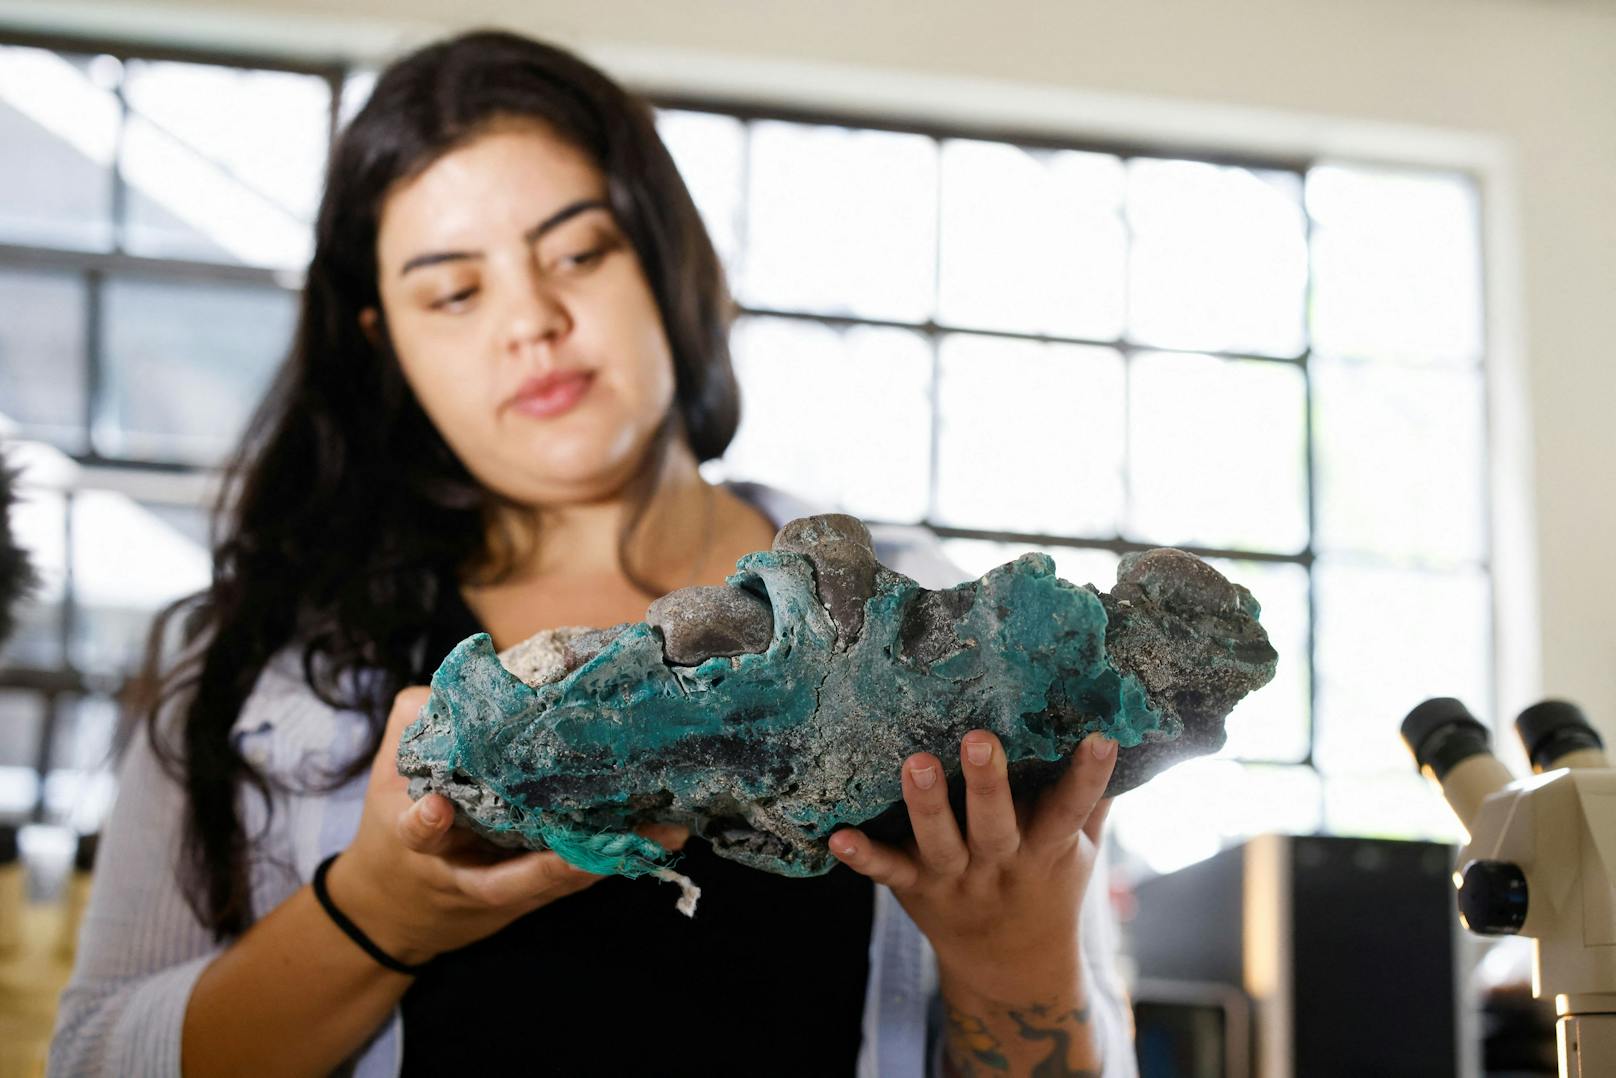 Fernanda Avelar Santos (Bild), Geologin an der Bundesuniversität von Parana und ihr Team führten chemische Tests durch, um herauszufinden, welche Art von Kunststoffen in den Felsen enthalten ist